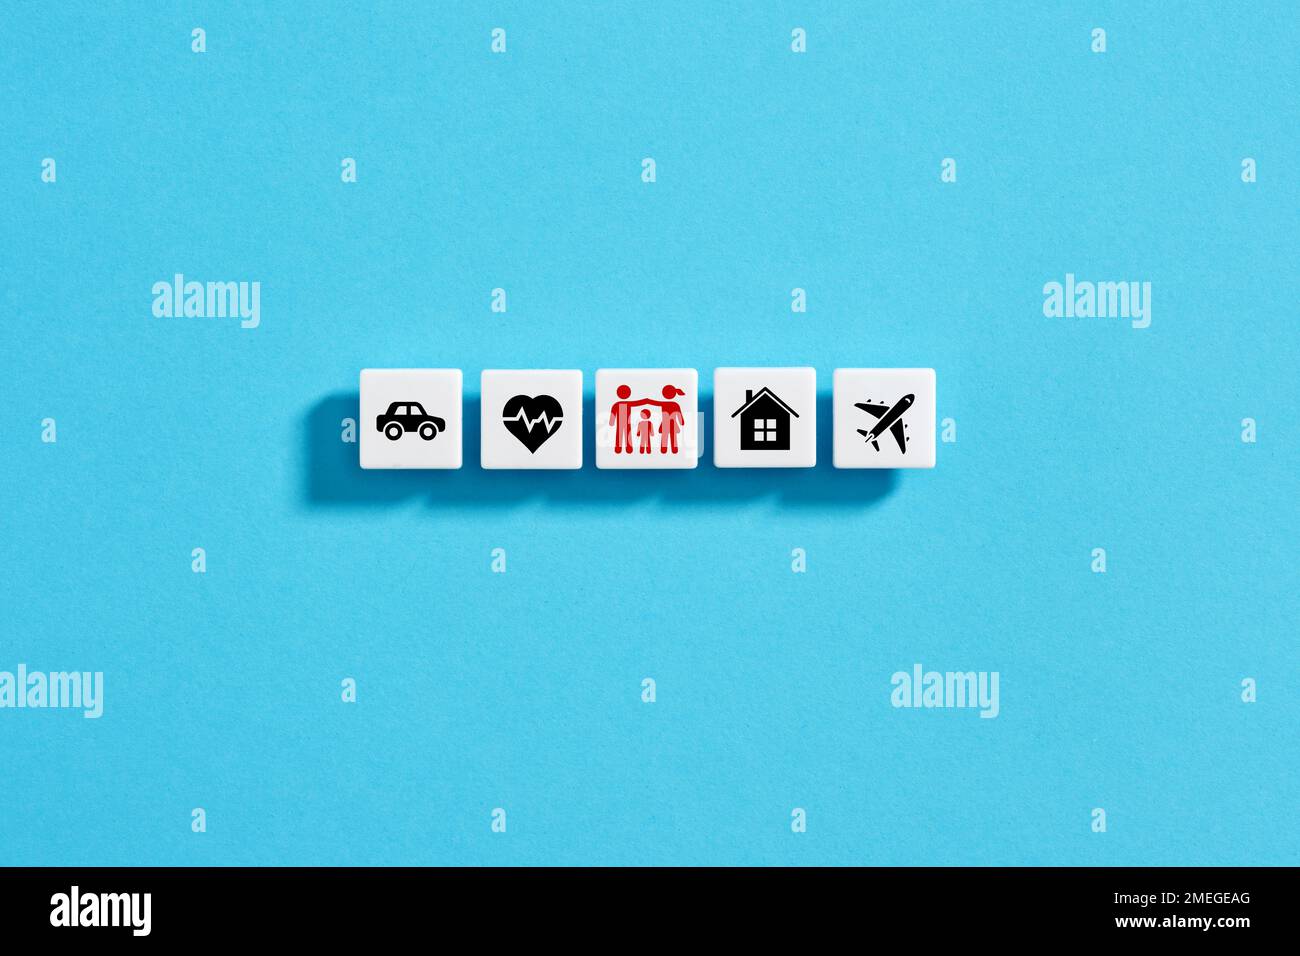 Weiße Blöcke mit Versicherungssymbolen auf blauem Hintergrund. Familien-, Lebens-, Auto-, Reise-, Kranken- und Hausversicherung. Stockfoto